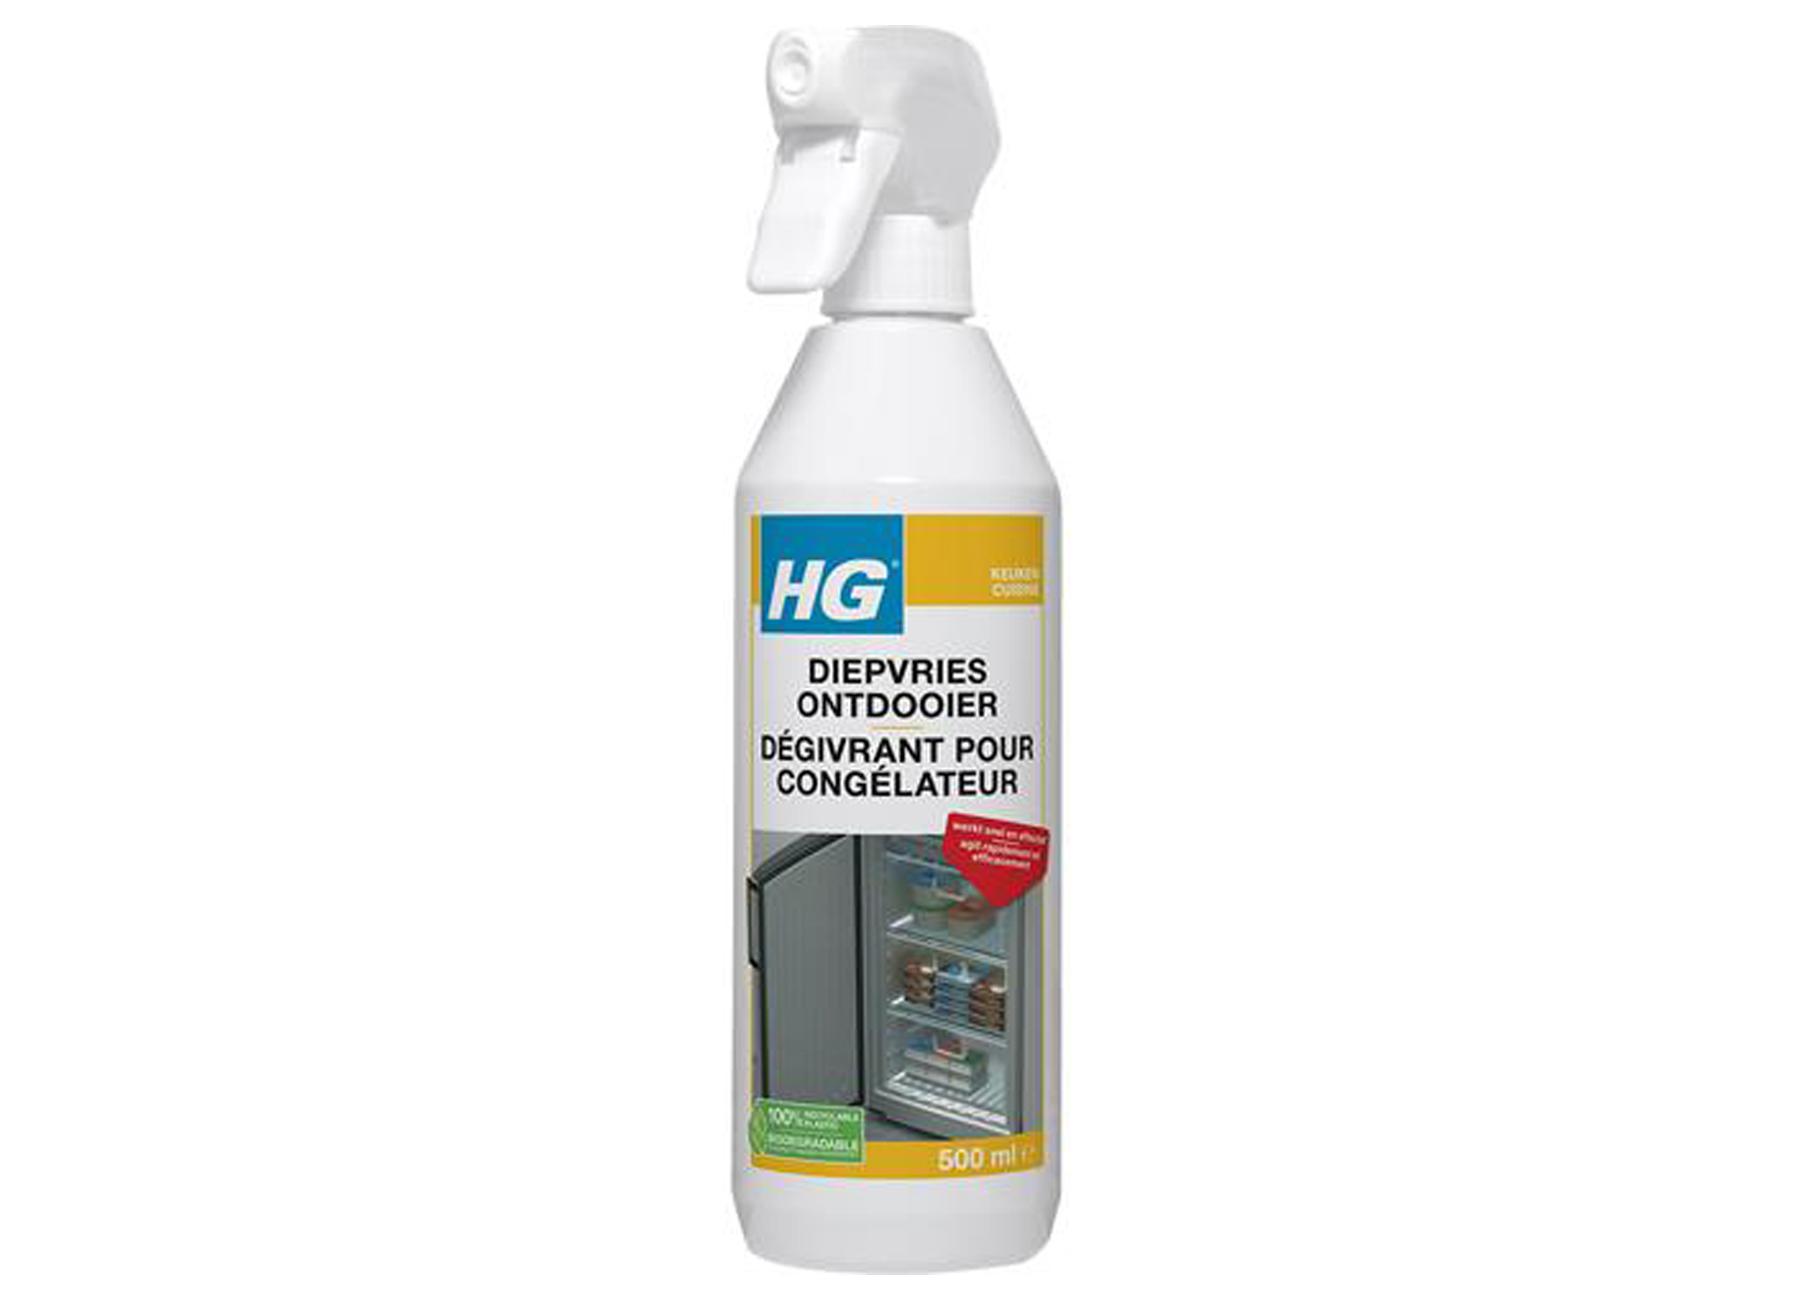 Hg Degivrant Pour Congelateur 500ml - menage - nettoyer - produits de  nettoyage et entretien - appareils - hg degivrant pour congelateur 500ml